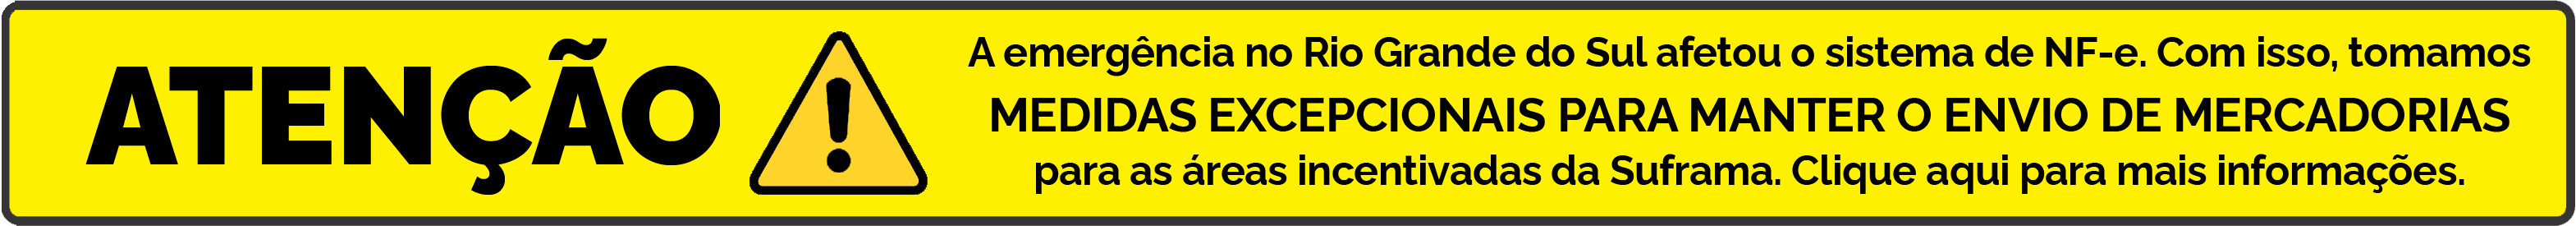 Banner de aviso sobre medida de emergência em função das enchentes no Rio Grande do Sul